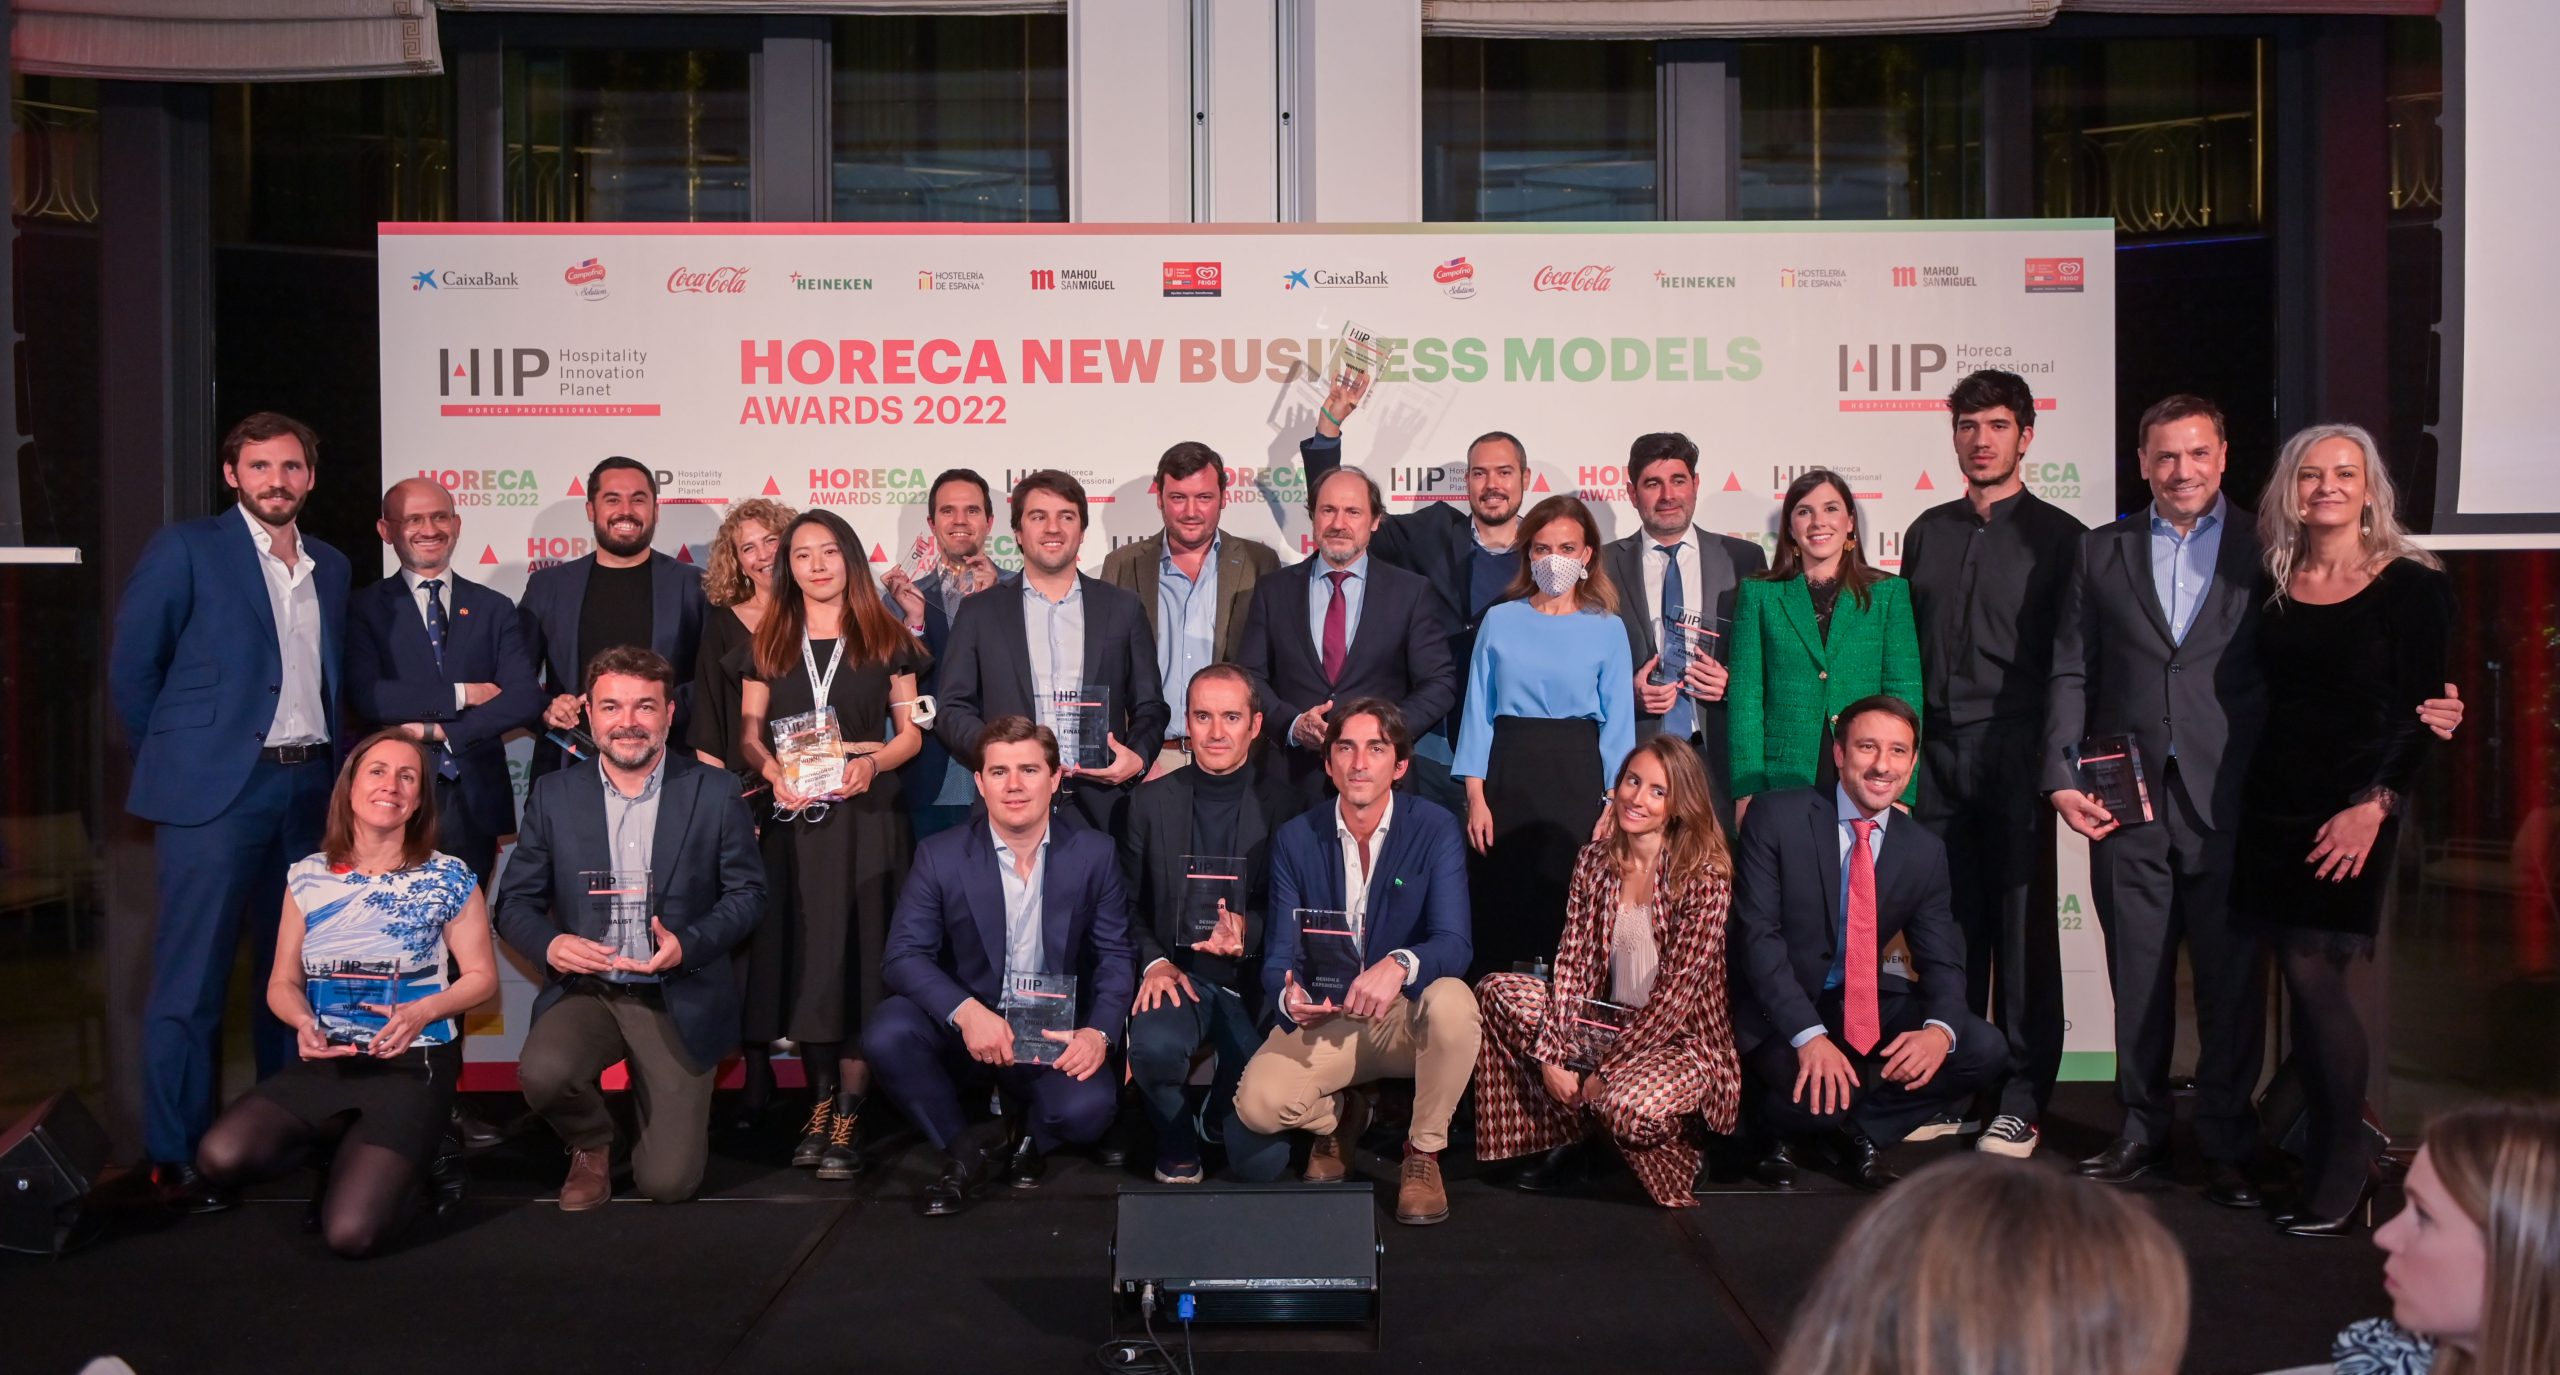 Cartas inteligentes, experiencias gastronómicas y robots autónomos para delivery, entre los proyectos premiados en los Horeca New Business Models Awards 2022 - La Viña